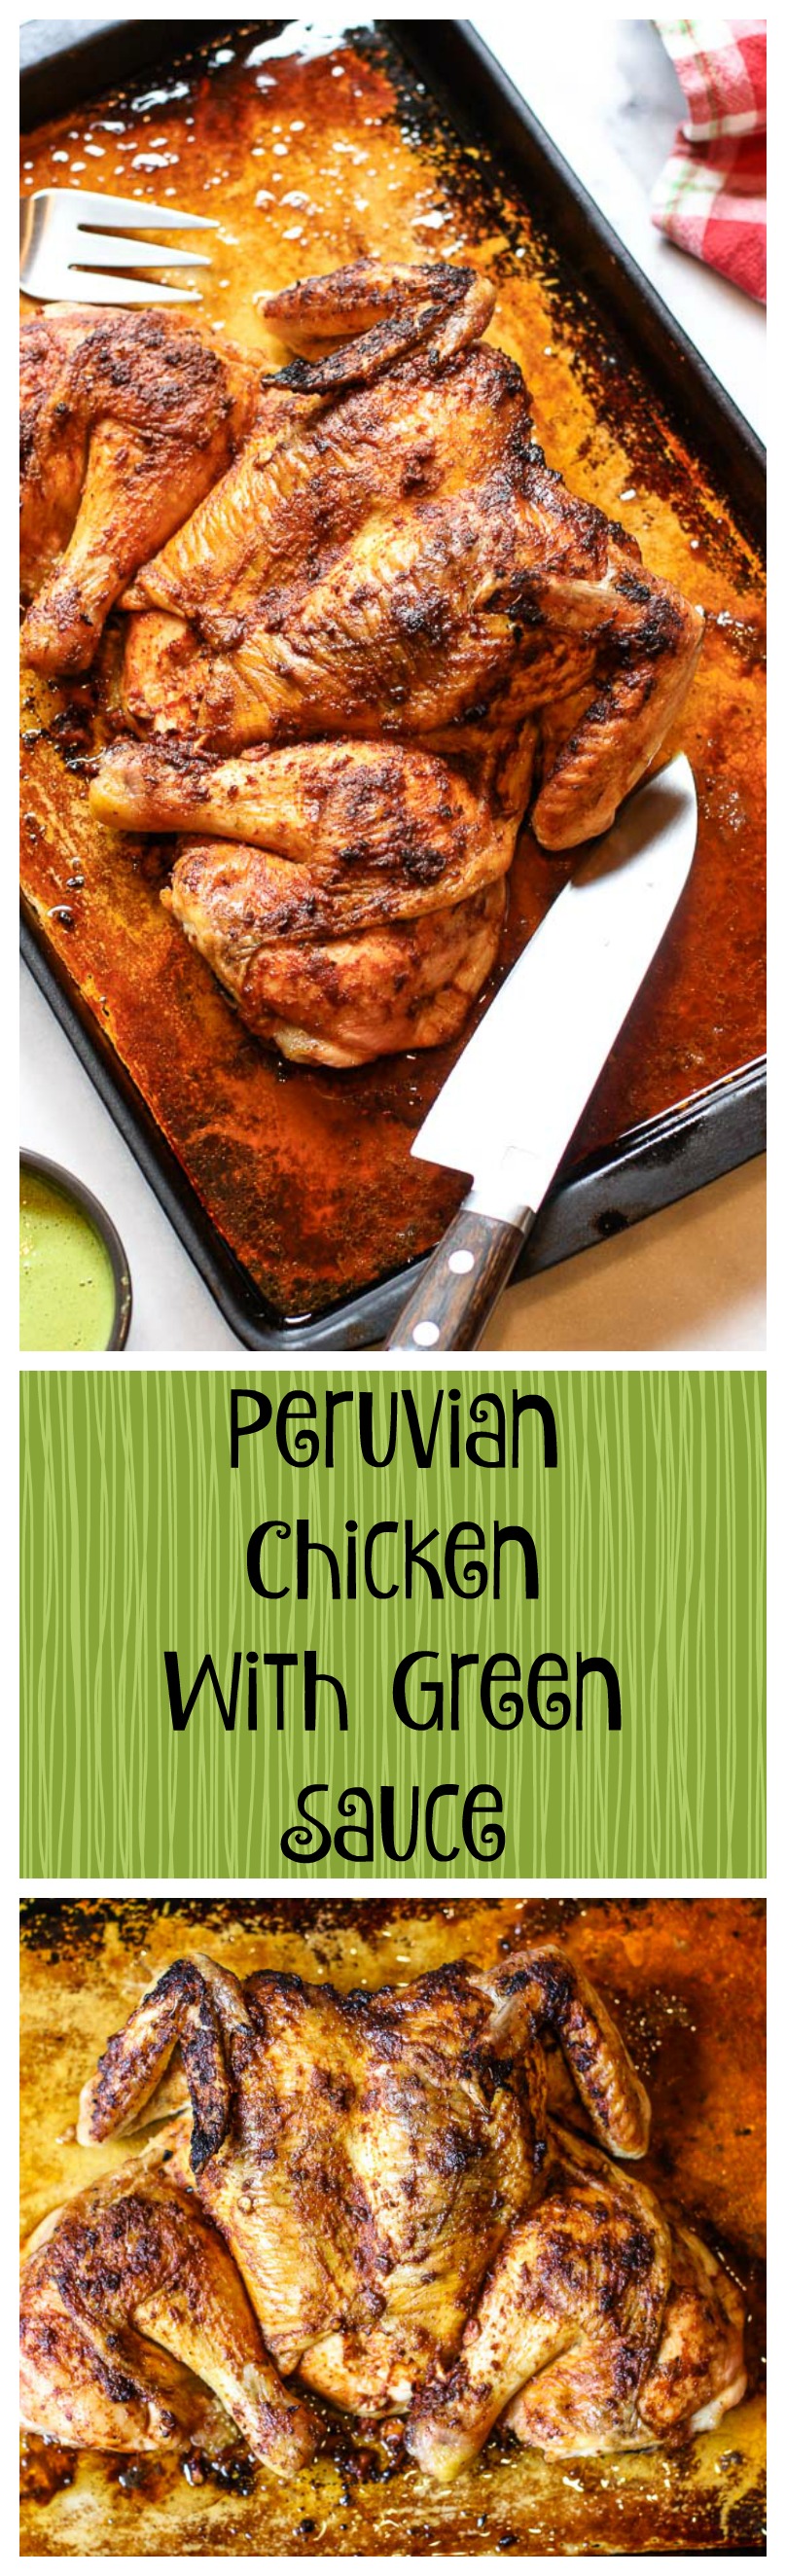 peruvian chicken with green sauce